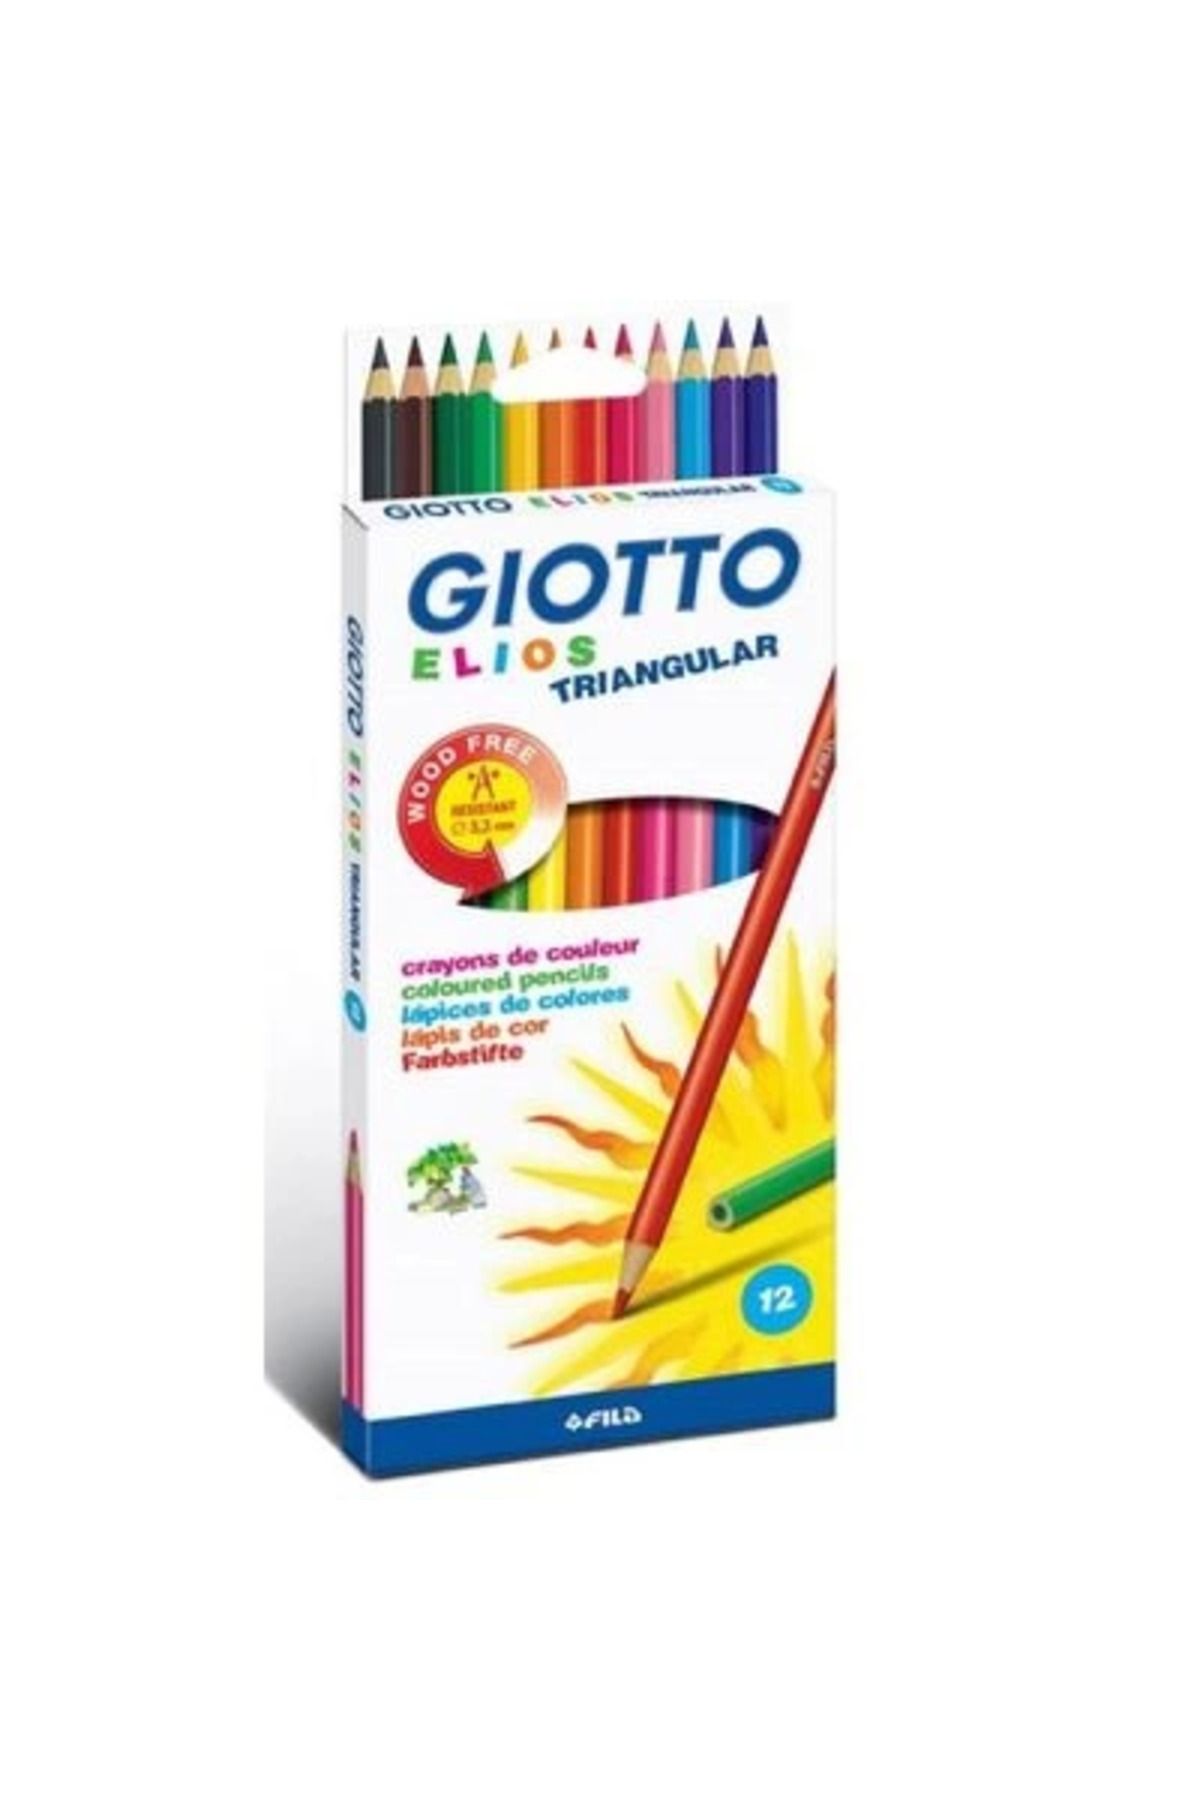 Giotto GİOTTO 275800 ELİOS KURU BOYA 12 RENK KARTON KUTU